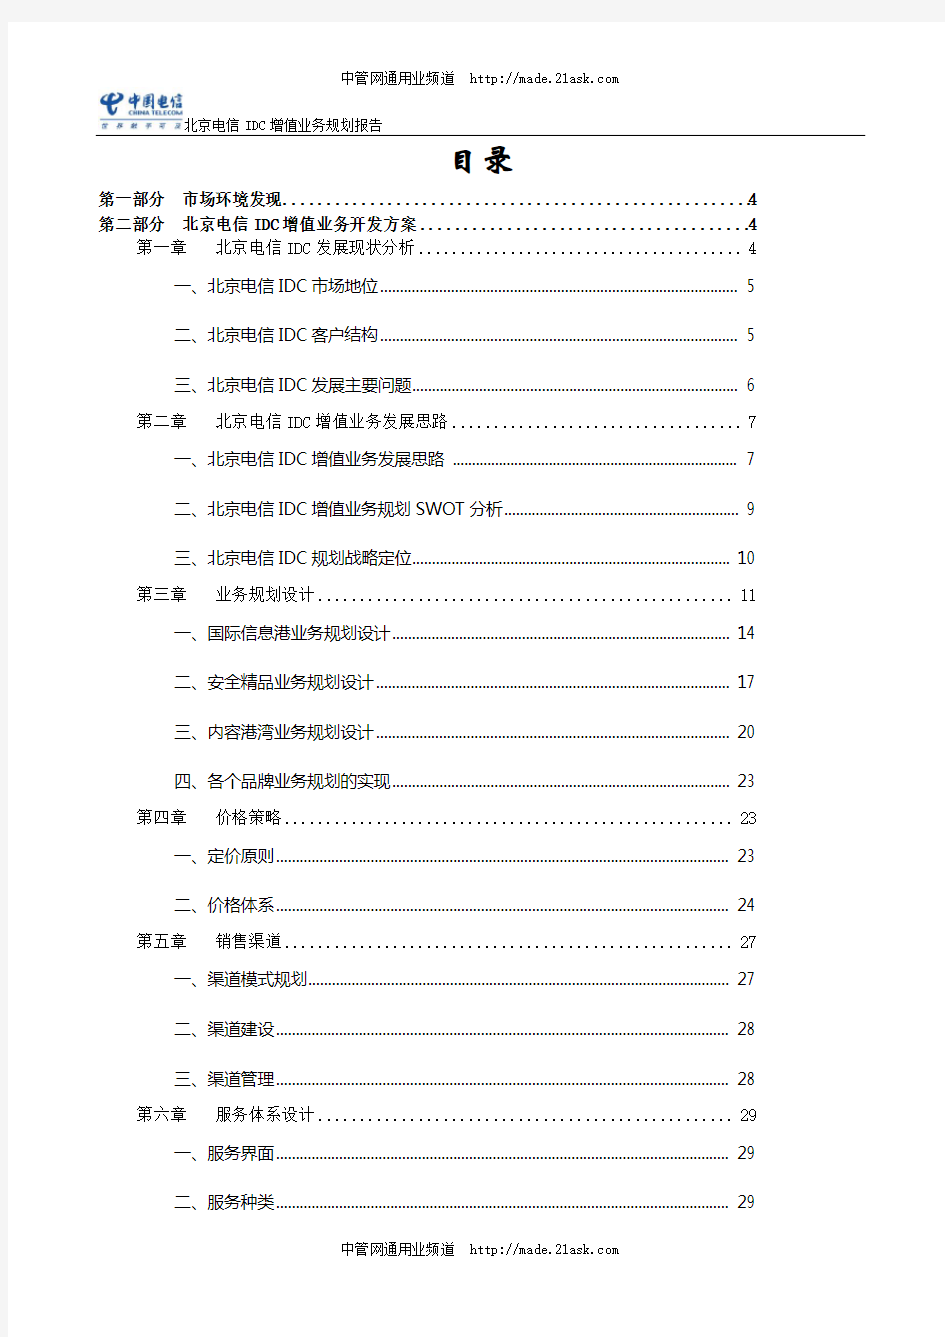 《2008年北京电信IDC增值业务规划报告》